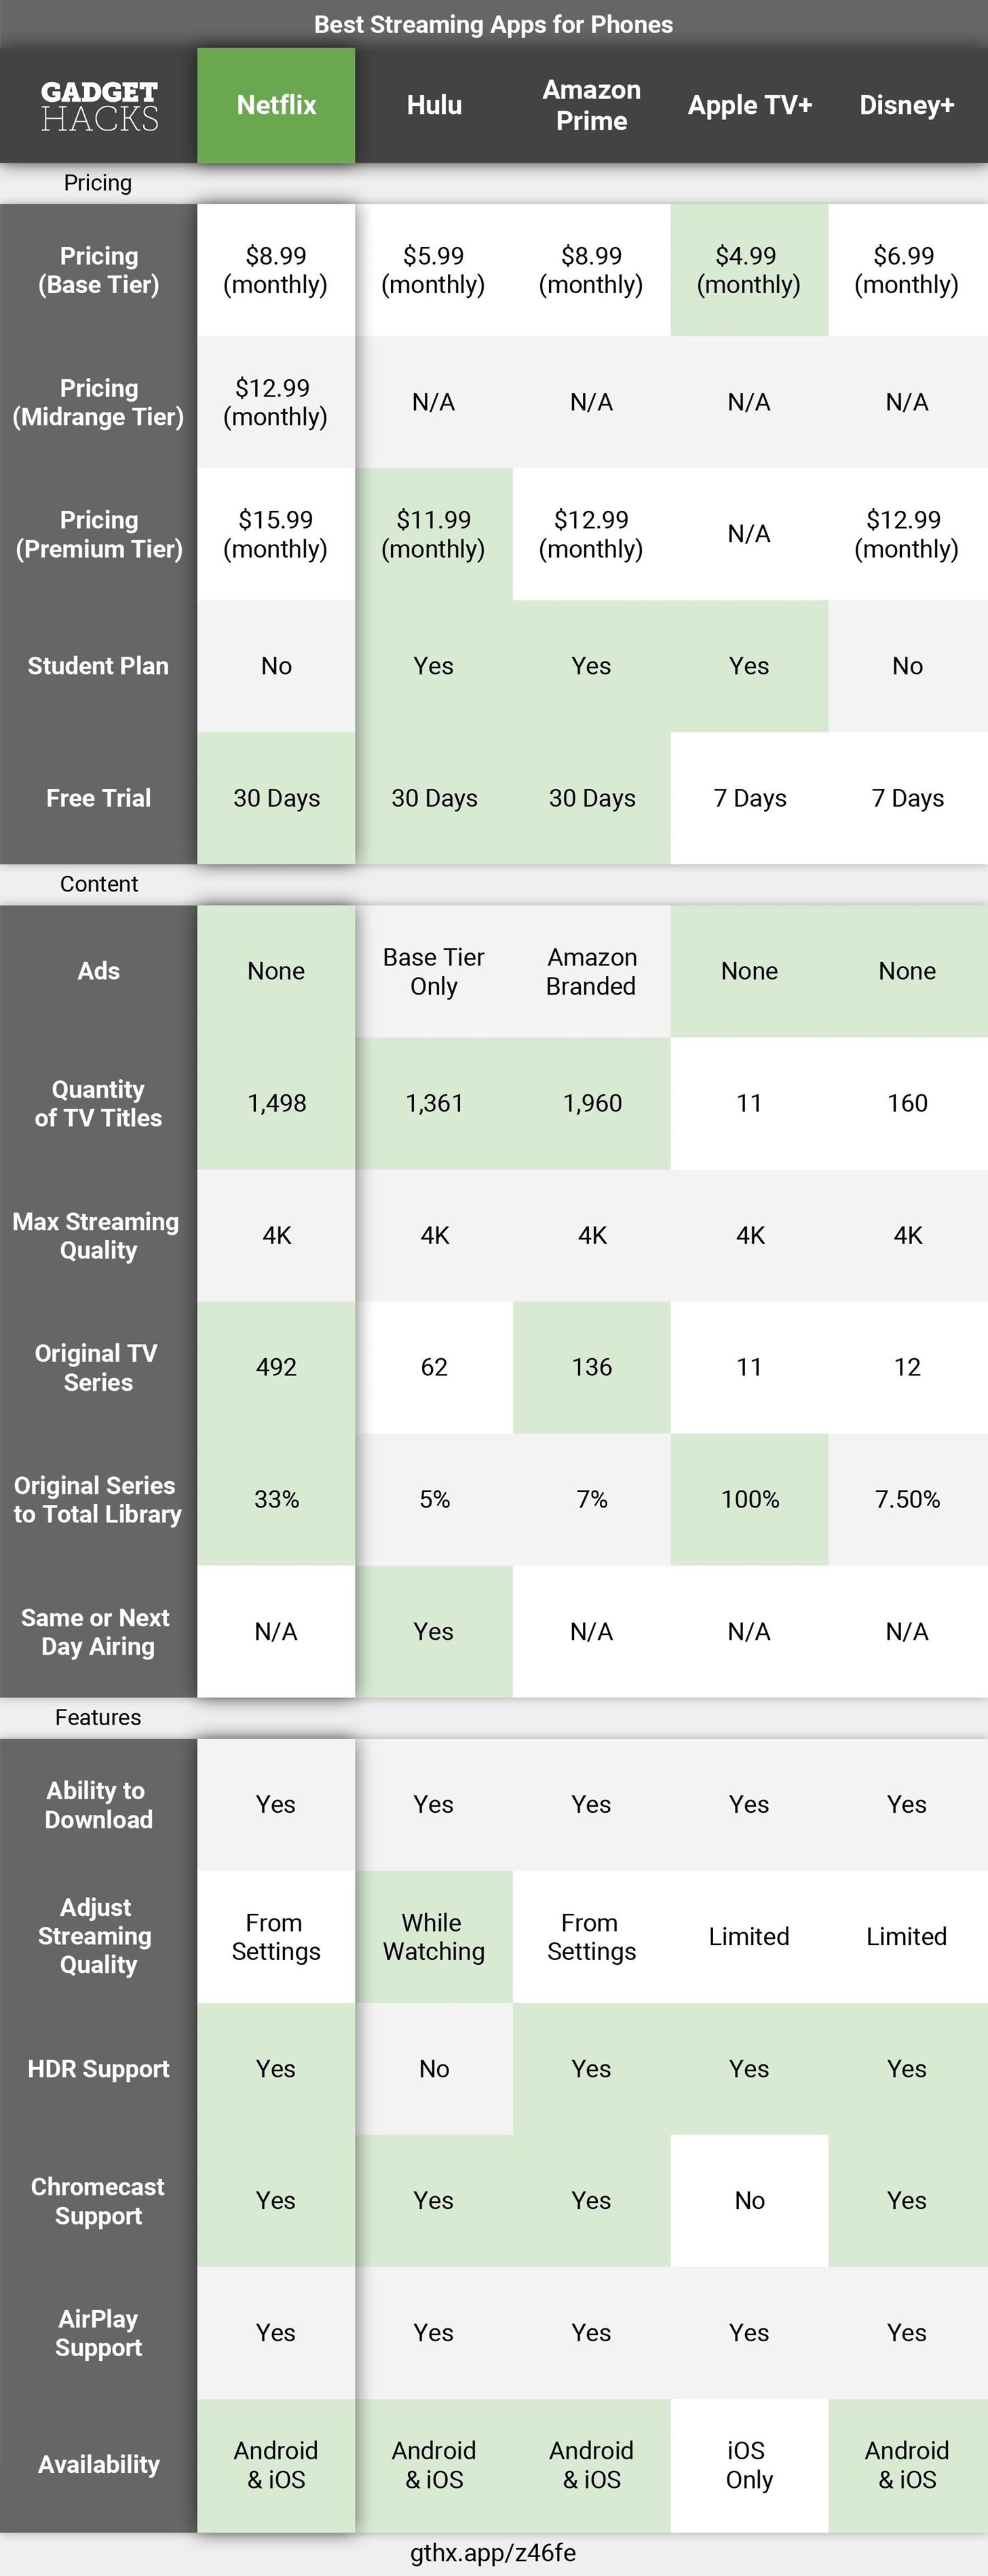 Best TV Streaming Apps: Disney+ vs. Apple TV+ vs. Netflix vs. Hulu vs. Amazon Prime